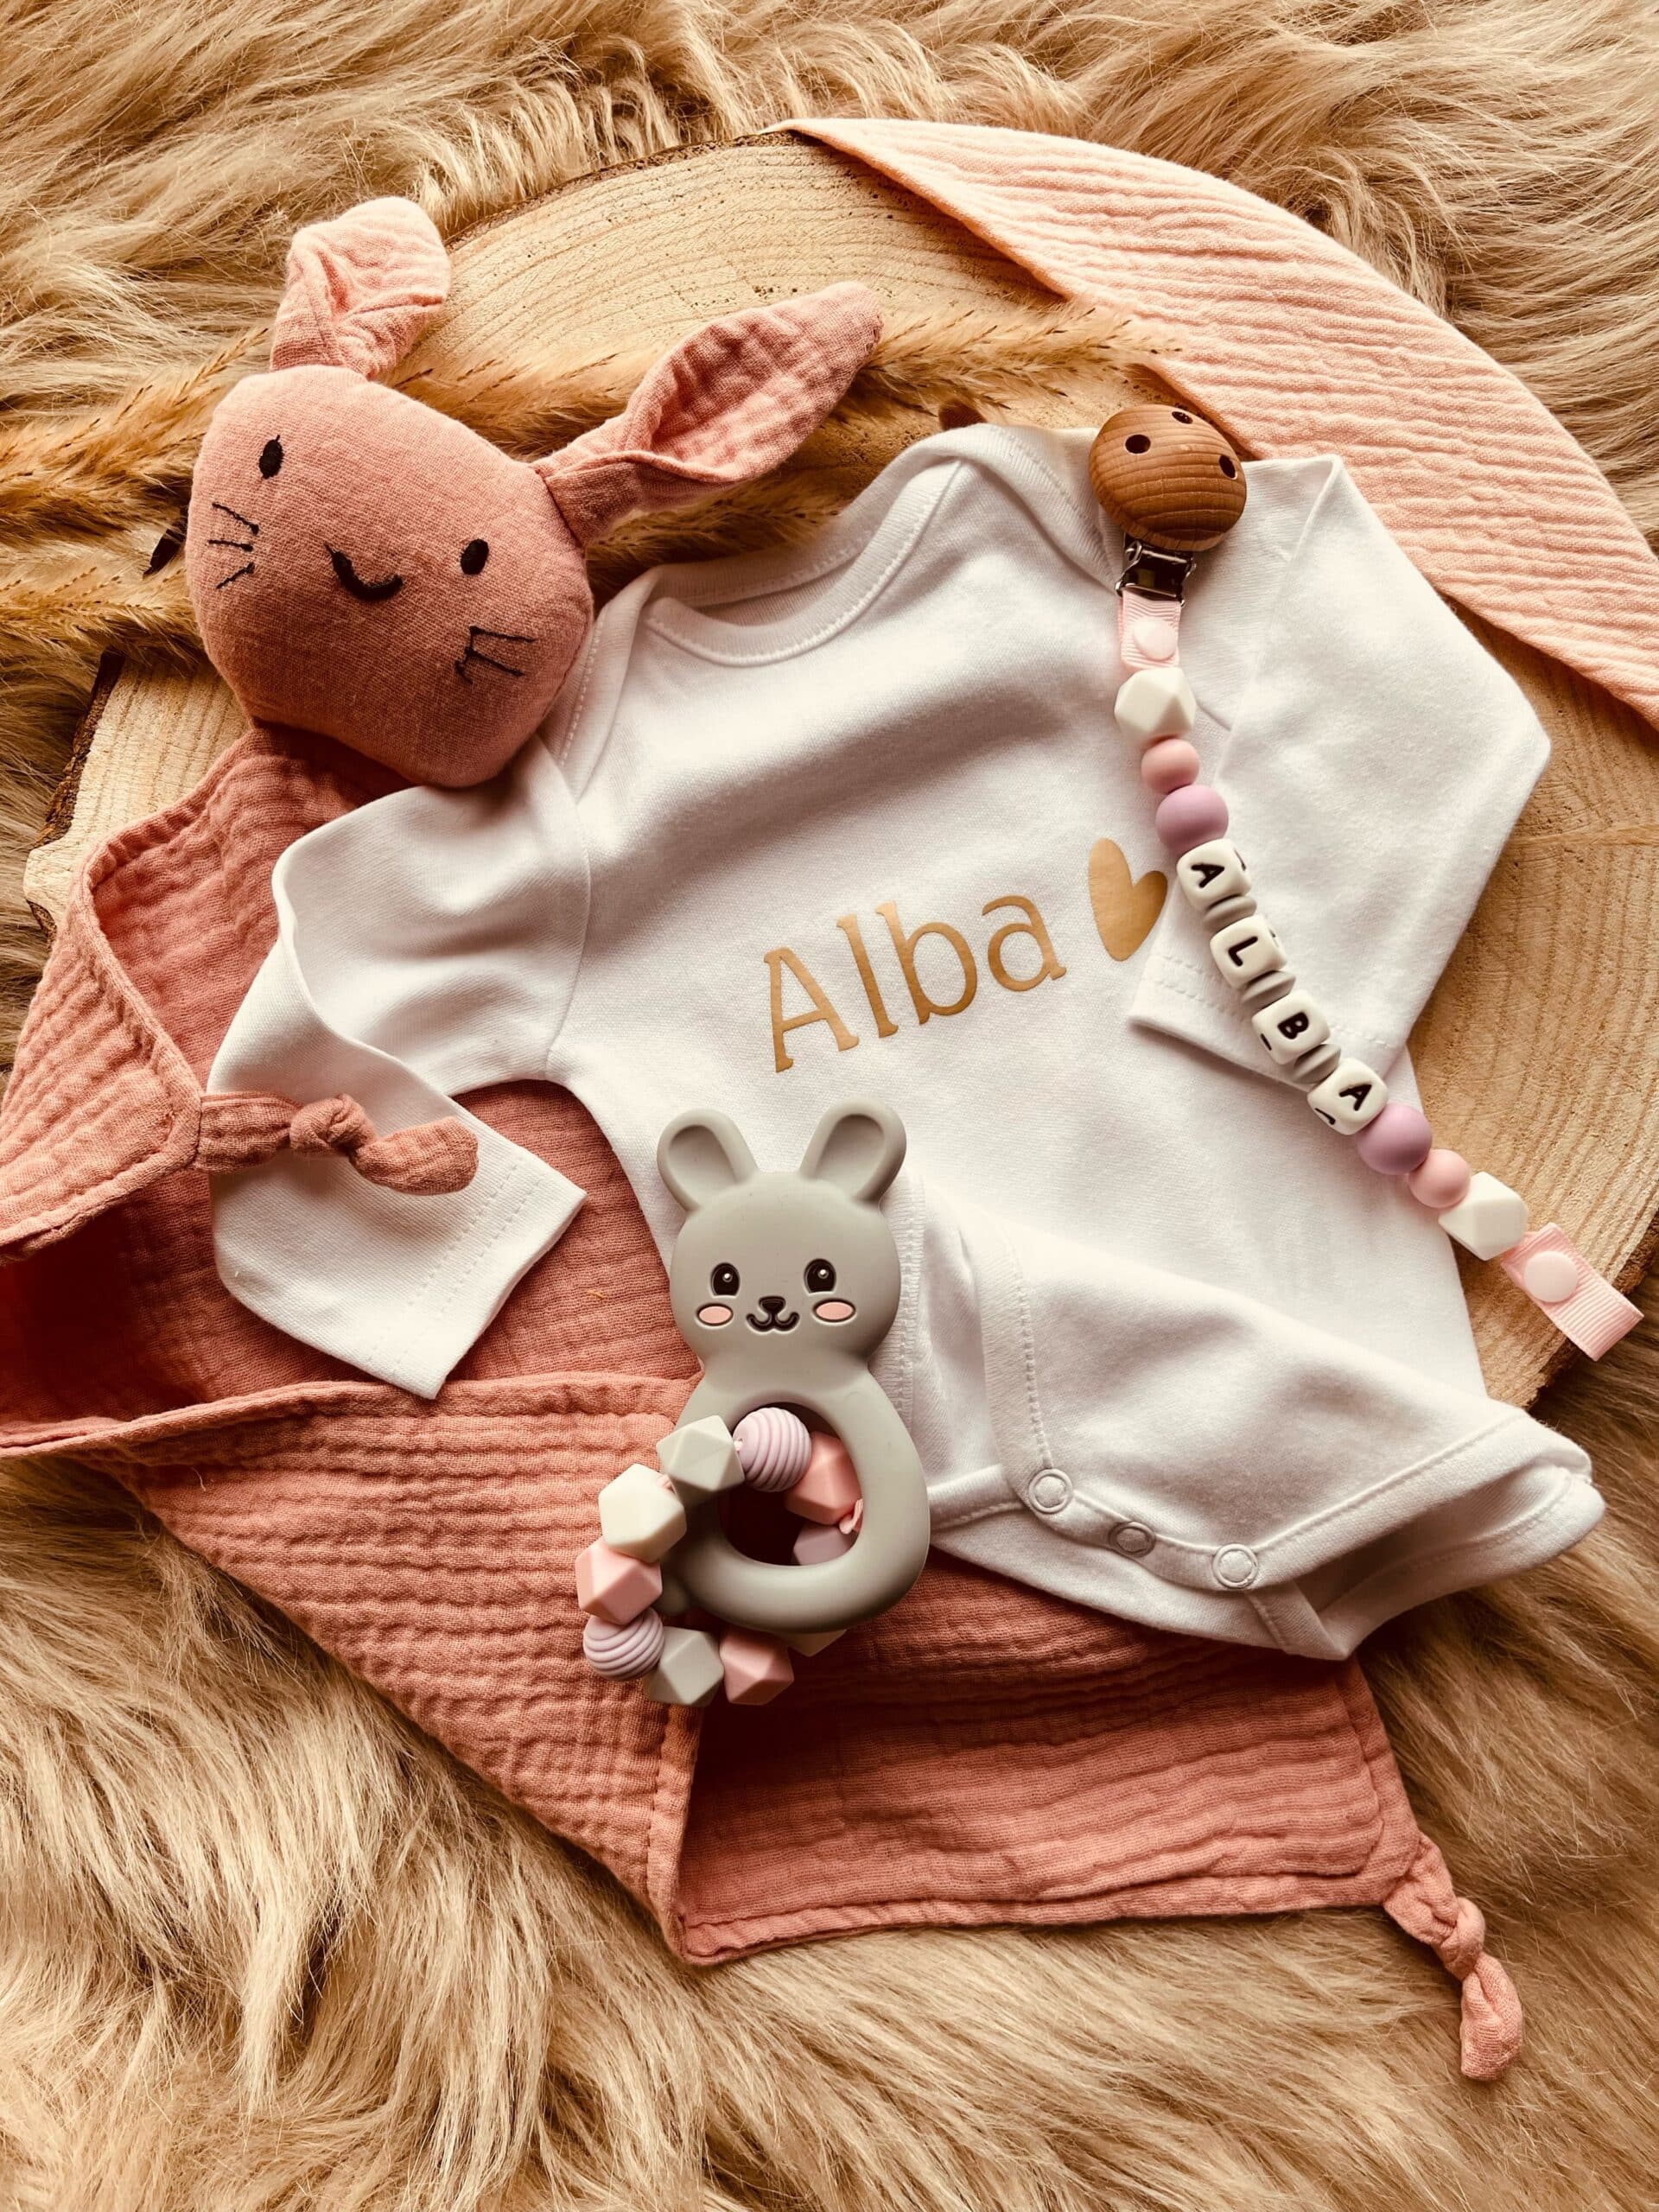 pyjama bébé personnalisé - cadeau naissance personnalisé